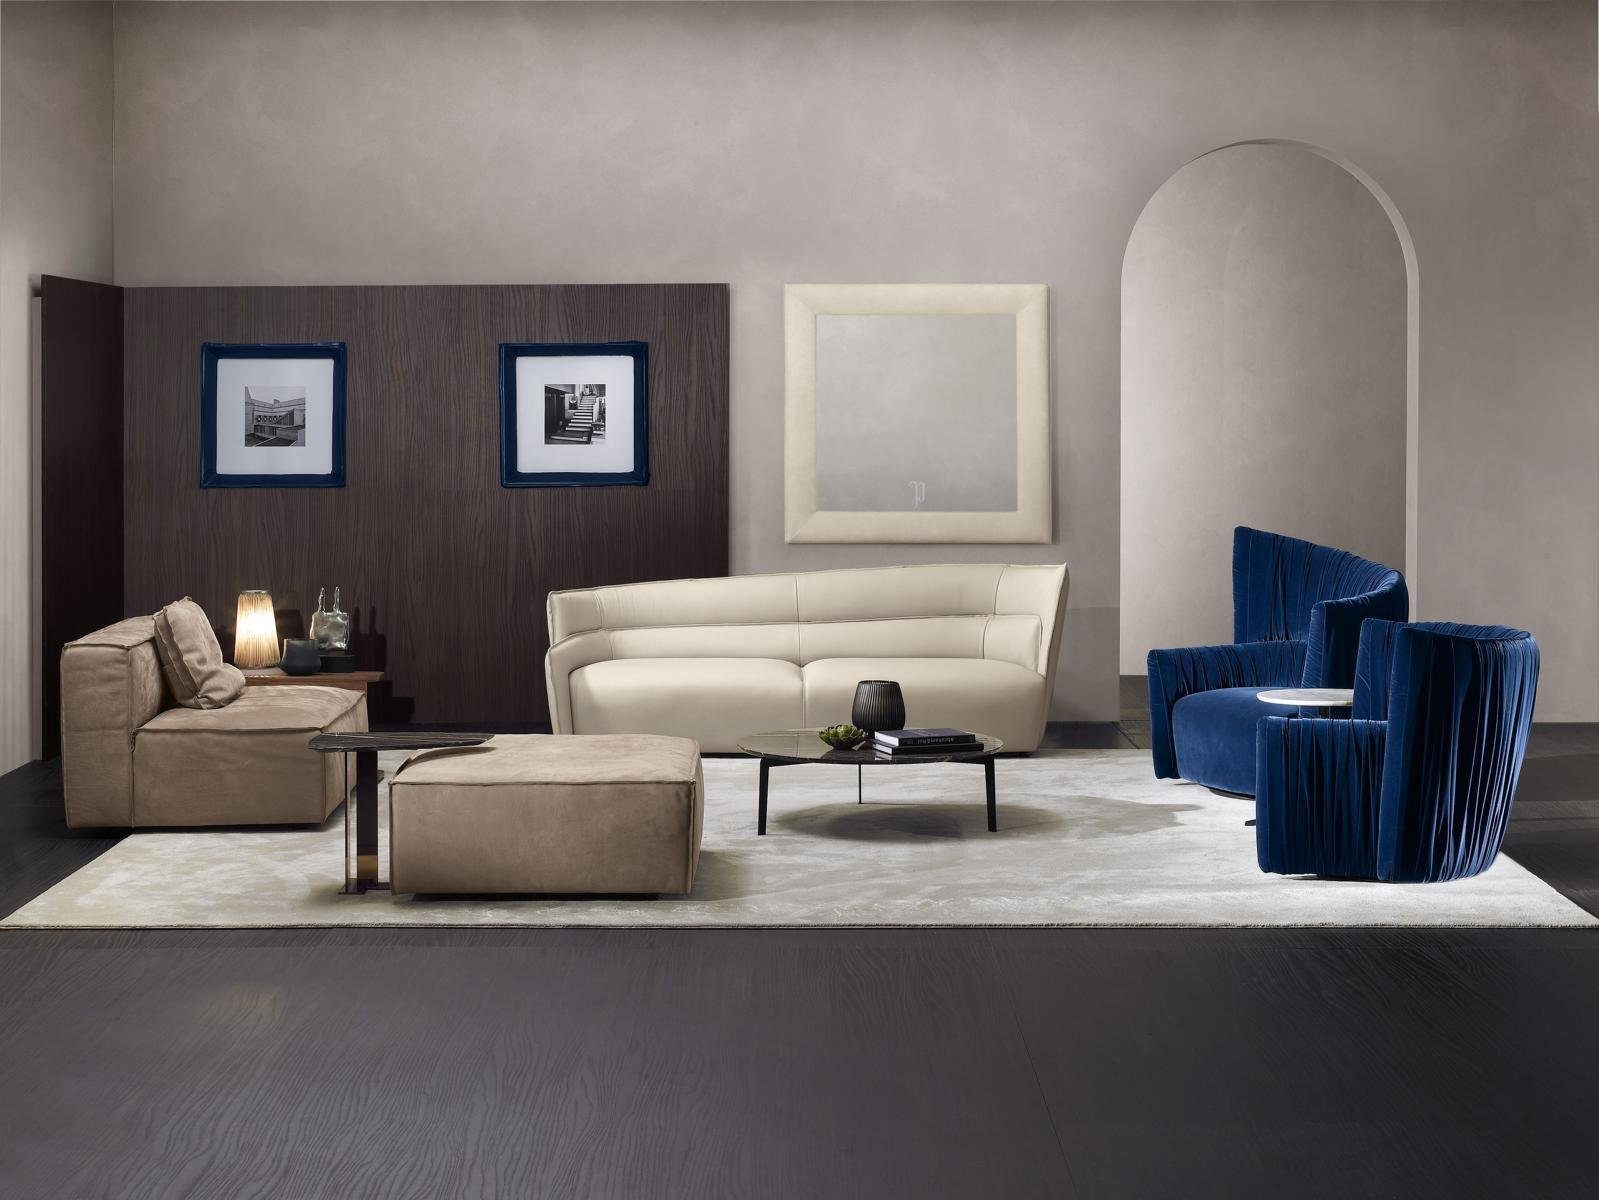 JVmoebel Sofa Sofagarnitur 3+1+1 Sitzer Wohnzimmer Garnitur Sofa Sessel Sofas Neu Weiß/Blau